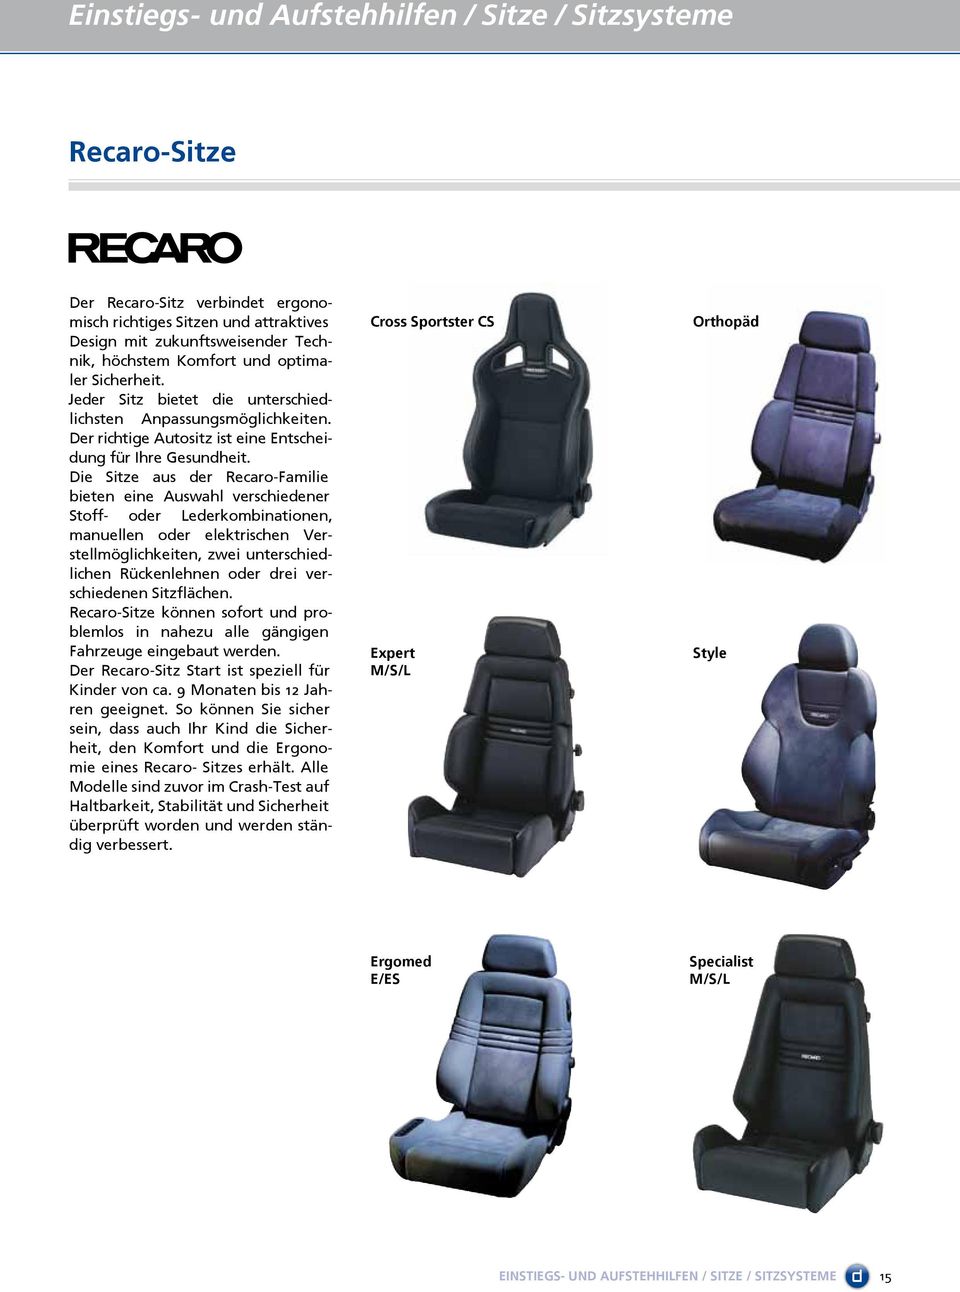 Die Sitze aus der Recaro-Familie bieten eine Auswahl verschiedener Stoff- oder Lederkombinationen, manuellen oder elektrischen Verstellmöglichkeiten, zwei unterschiedlichen Rückenlehnen oder drei